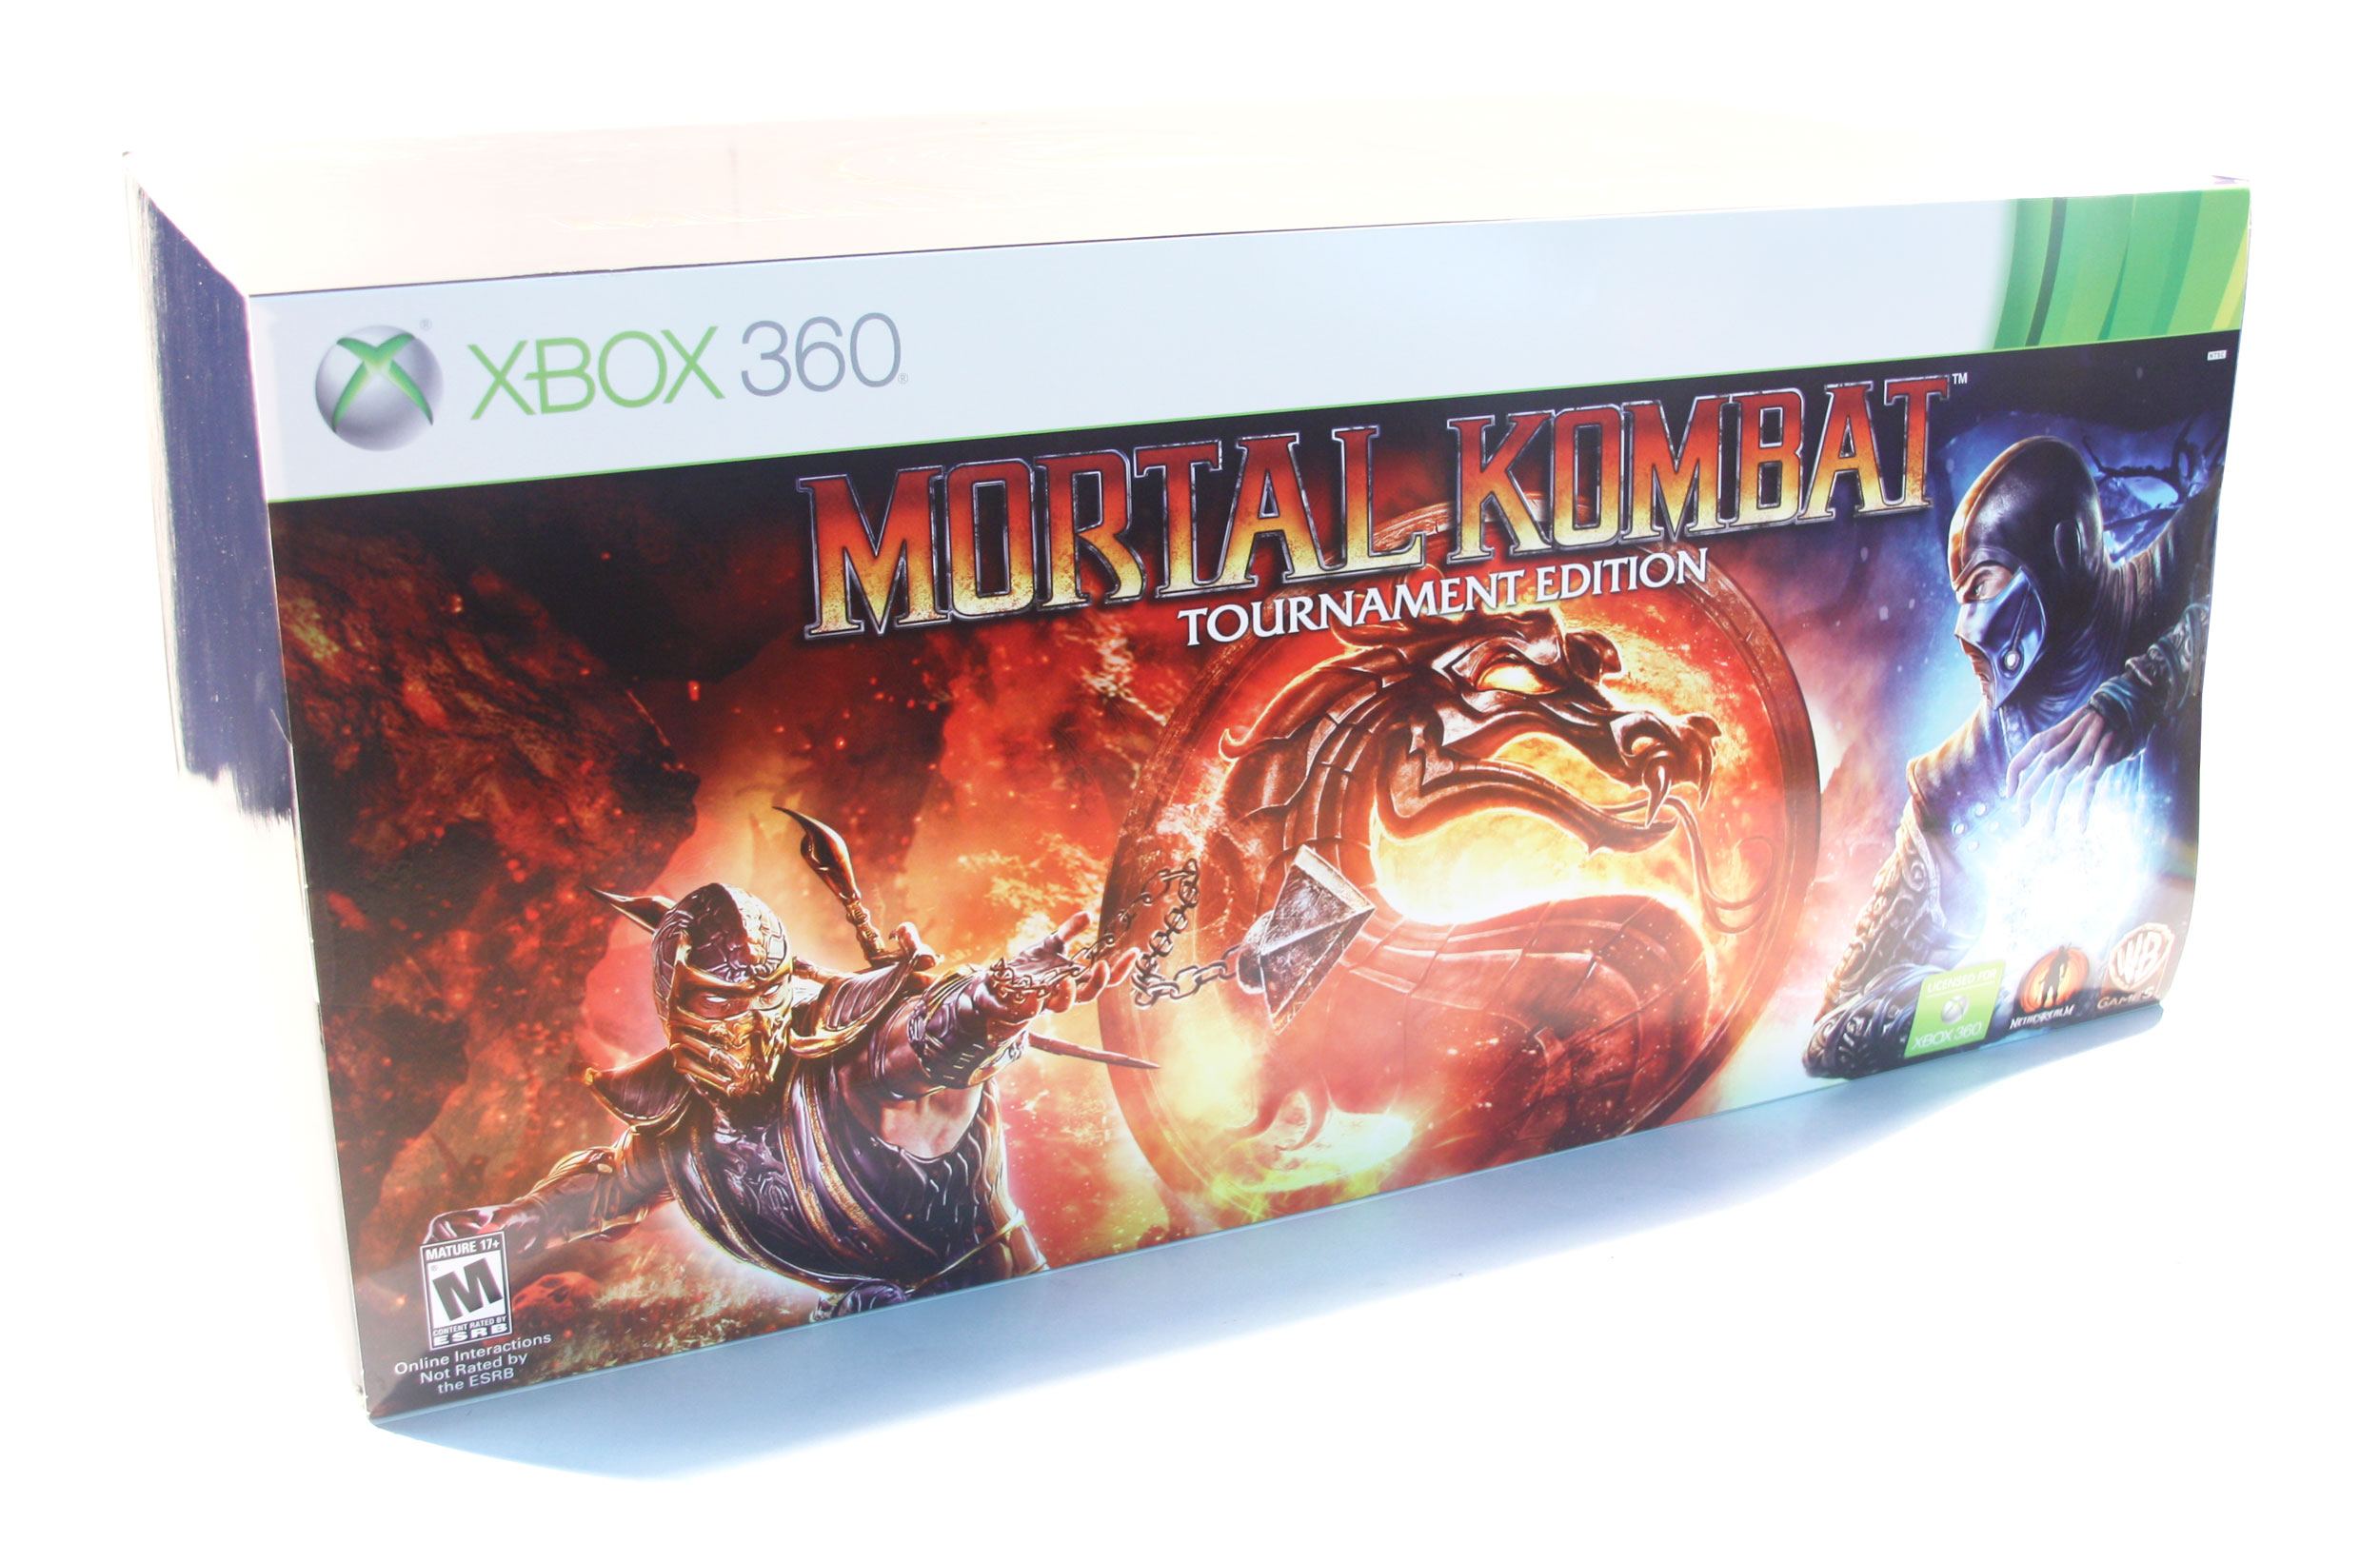 Buy Xbox 360 Xb360 Mortal Kombat Komplete